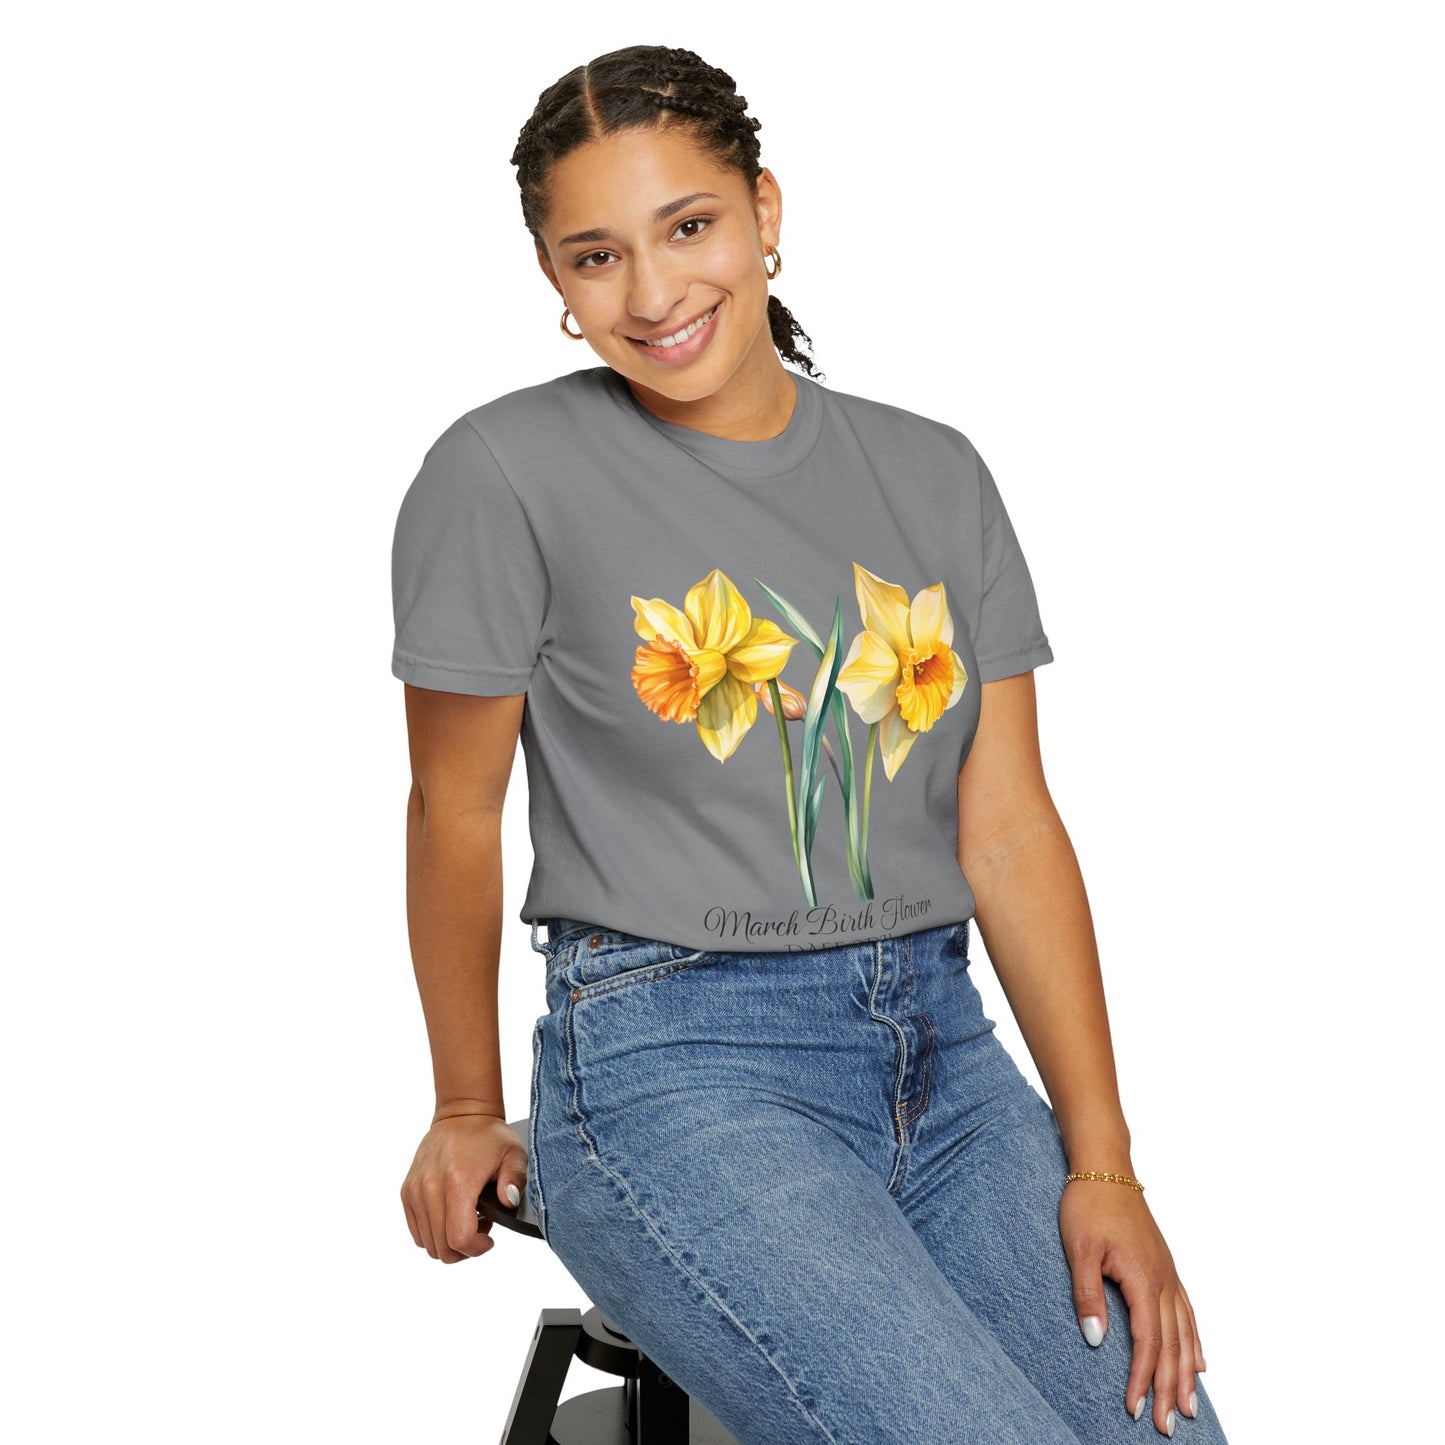 March Birth Flower "Daffodil" - Unisex Garment-Dyed T-shirt